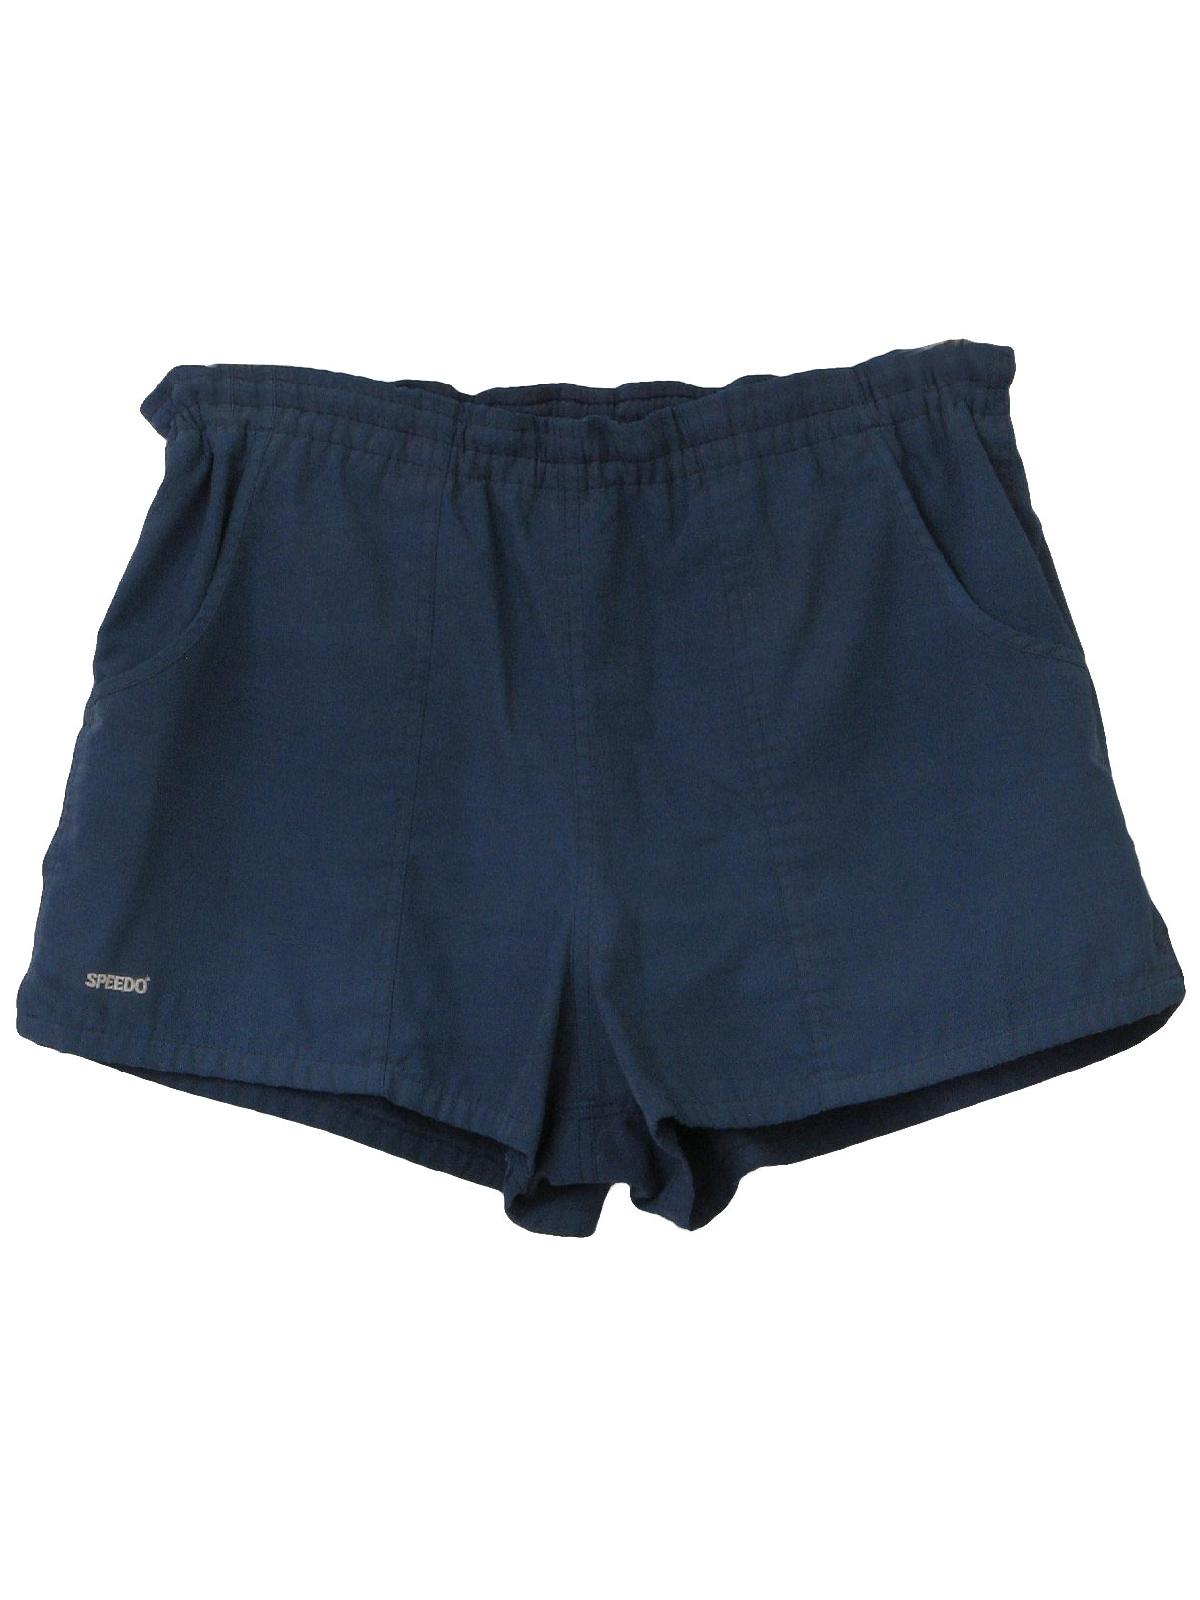 Vintage 1980's Swimsuit/Swimwear: 80s -Speedo- Mens dark dusty blue ...